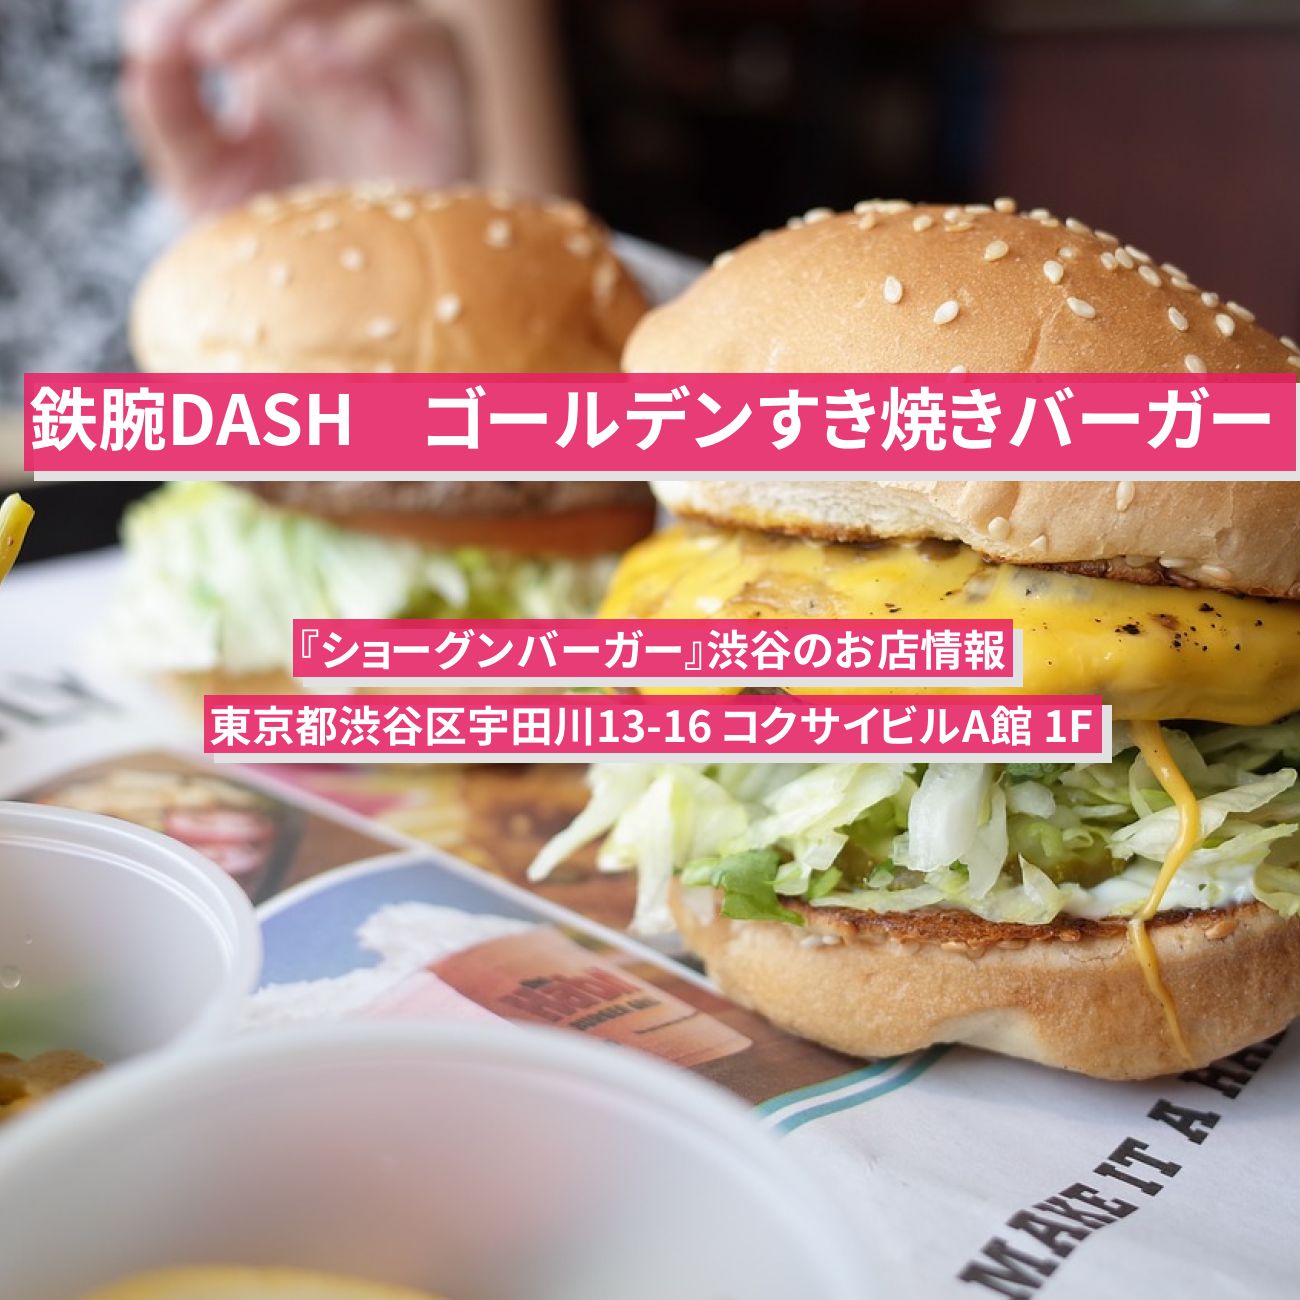 【鉄腕DASH】ゴールデンすき焼きバーガー『ショーグンバーガー』渋谷のお店情報〔鉄腕ダッシュ〕